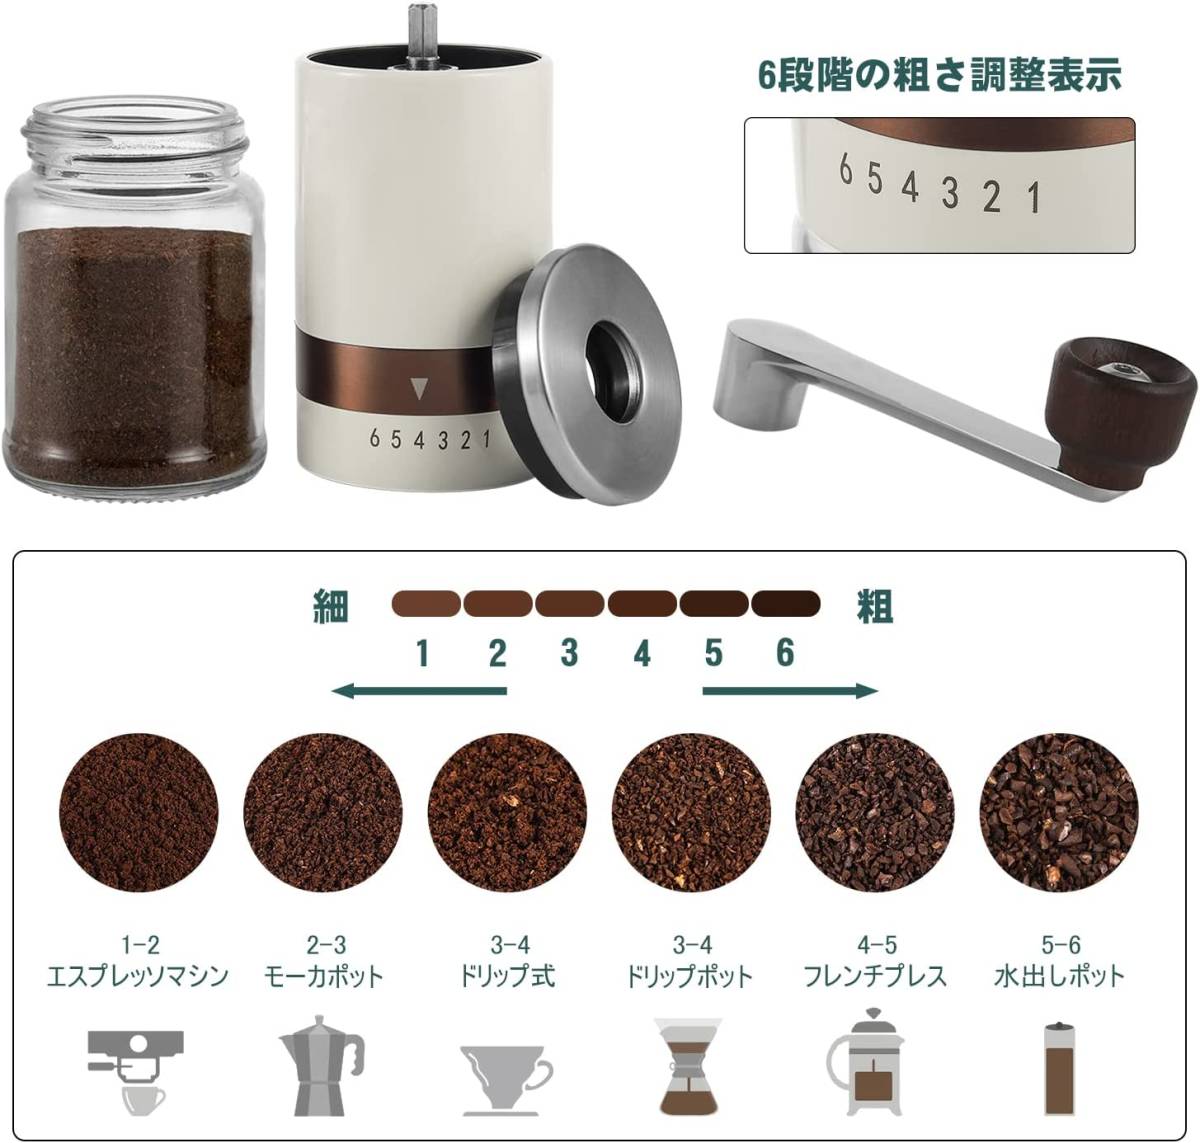 手挽きコーヒーミル 手動 コーヒーグラインダー セラミック製臼 小型 6度調節機可能 水洗い可能 軽量 持ち運びやすい お手入れ簡単 ギフト